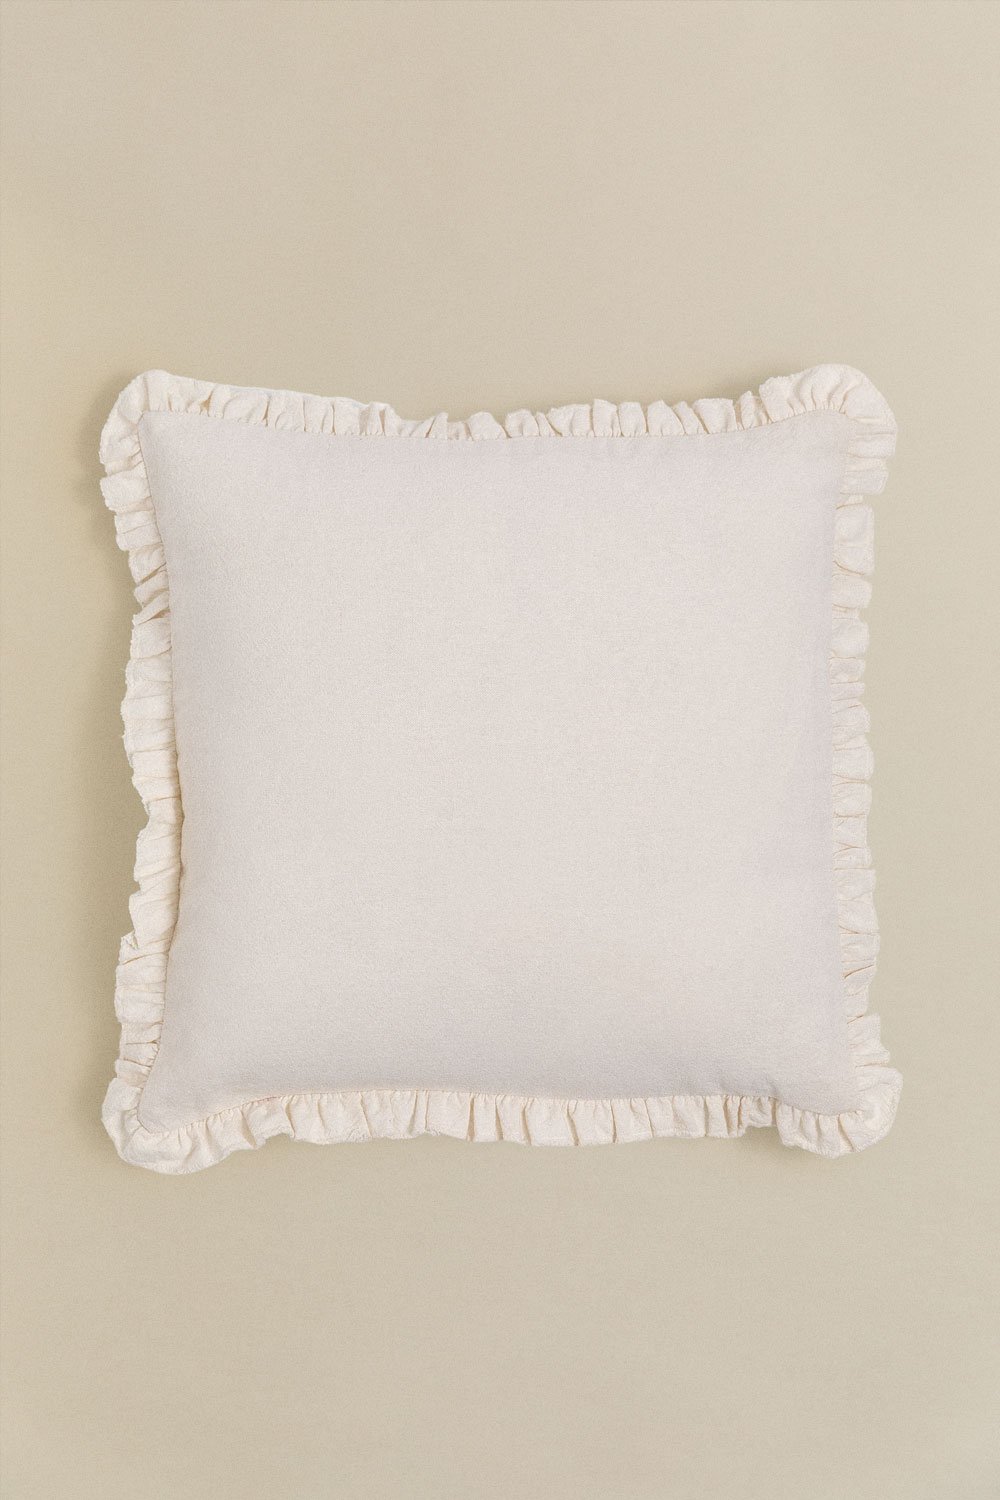 Kwadratowa poduszka z bawełny (40x40 cm) Arassu, obrazek w galerii 1